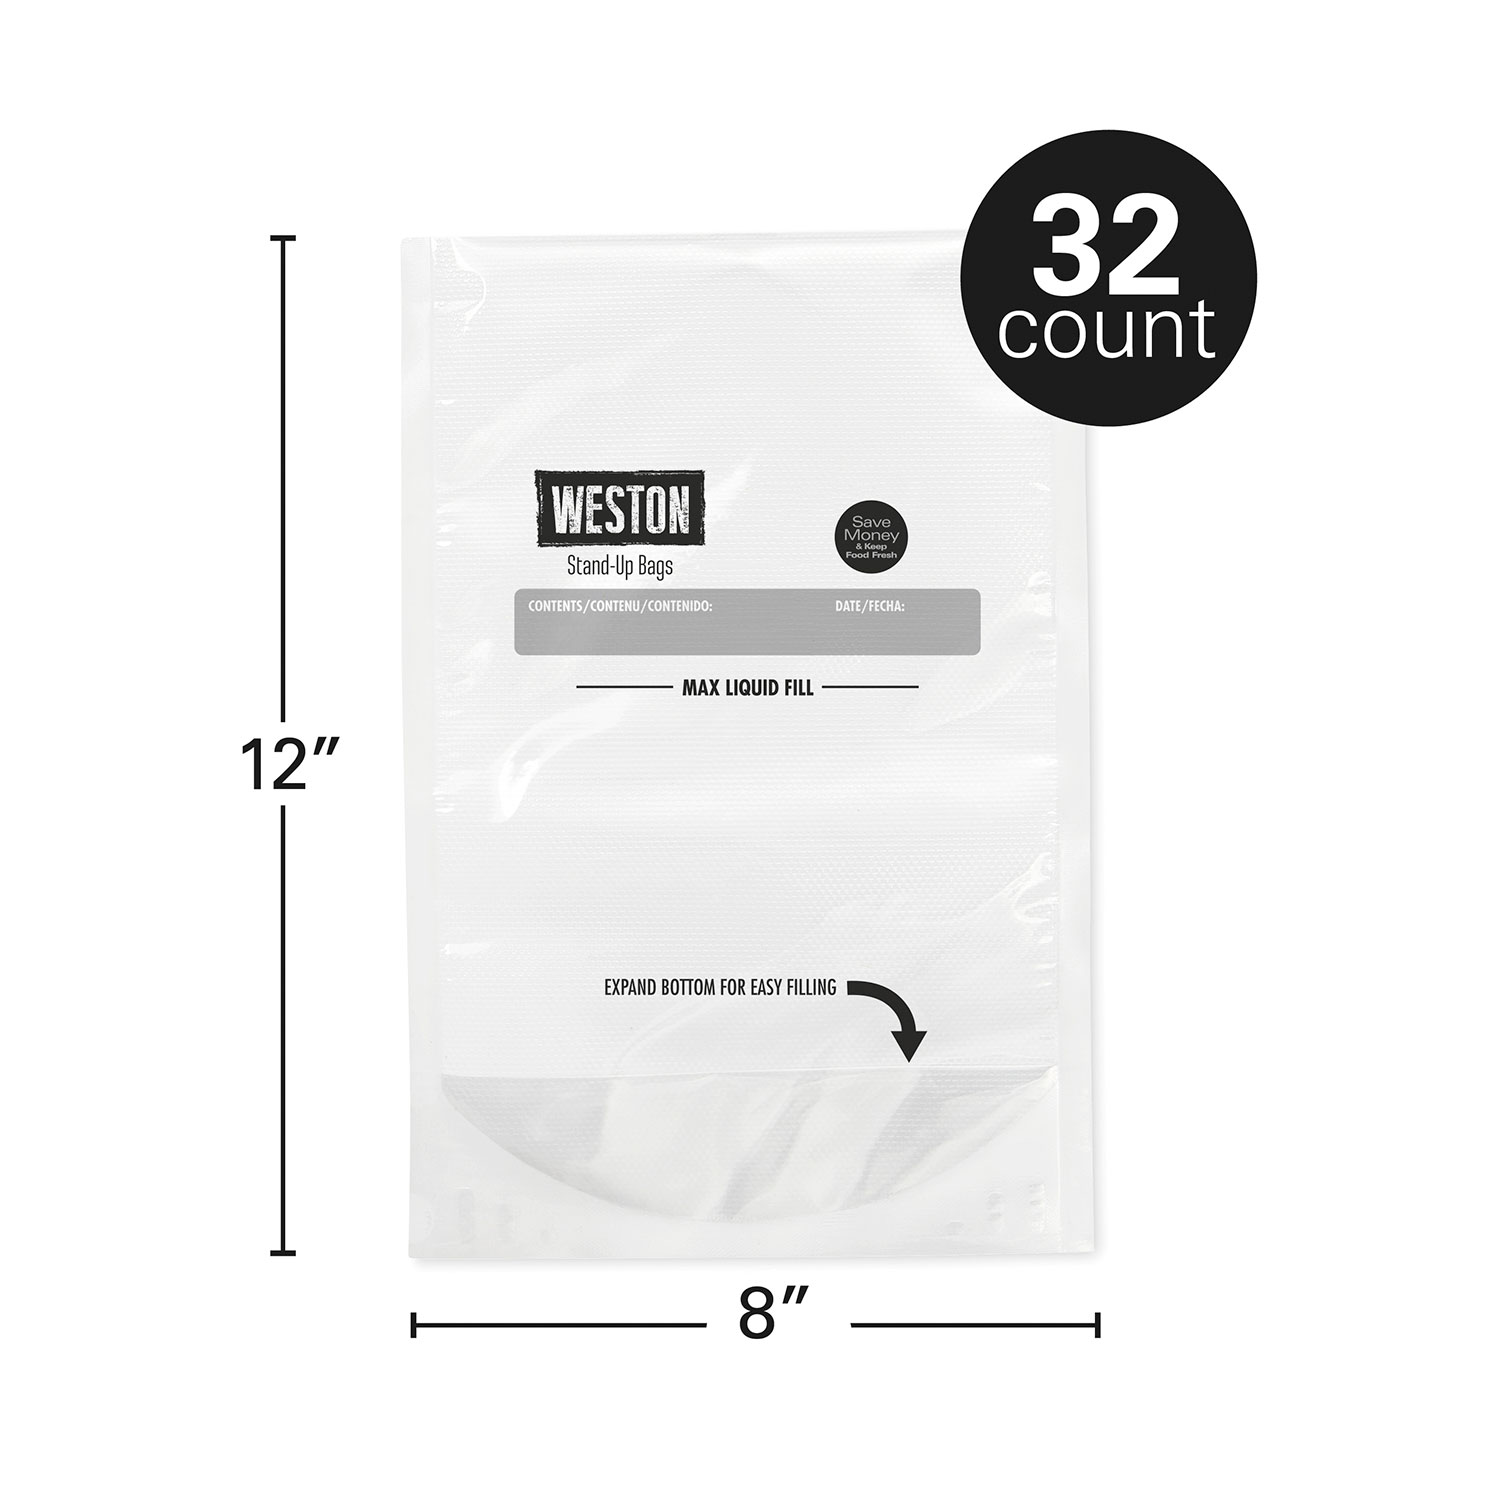 Weston Vacuum Sealer Bags, 8 in x 12 in, 66 Pre-Cut Bags - 30-0110-W